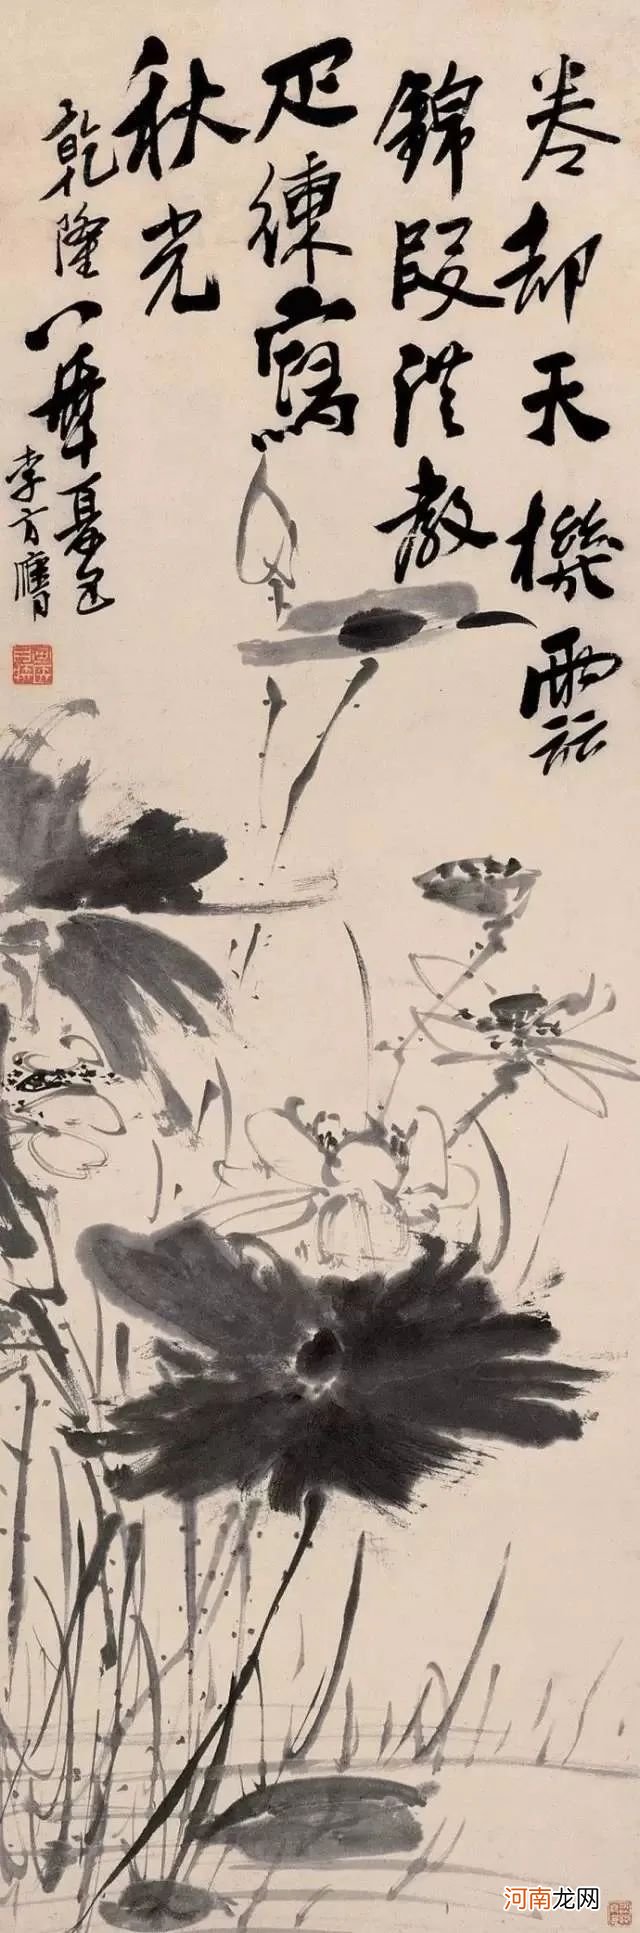 “扬州八怪”之一的李方膺写意花鸟欣赏 写意花鸟画优秀作品